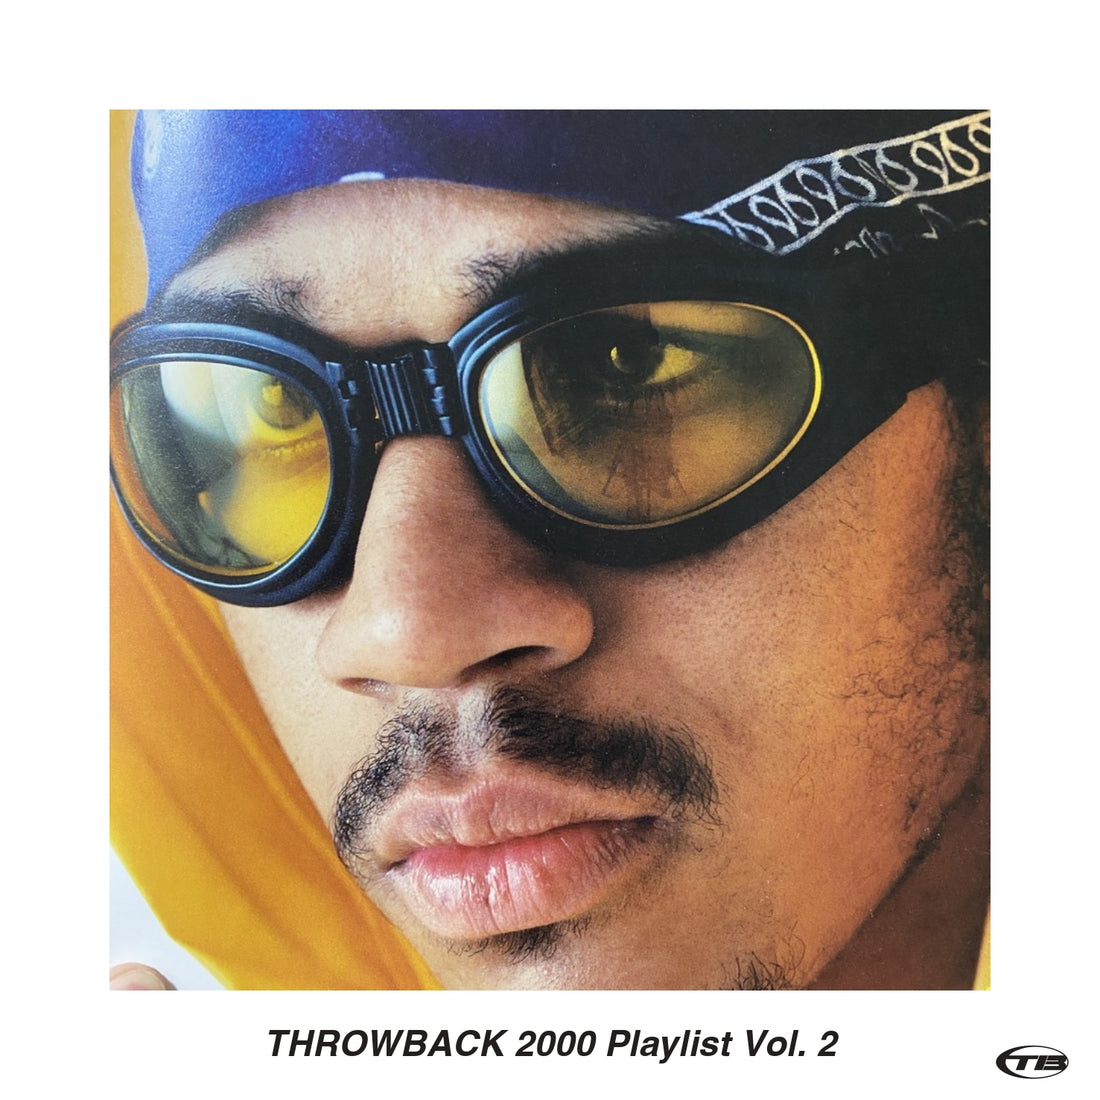 THROWBACK 2000 Playlist Vol. 2